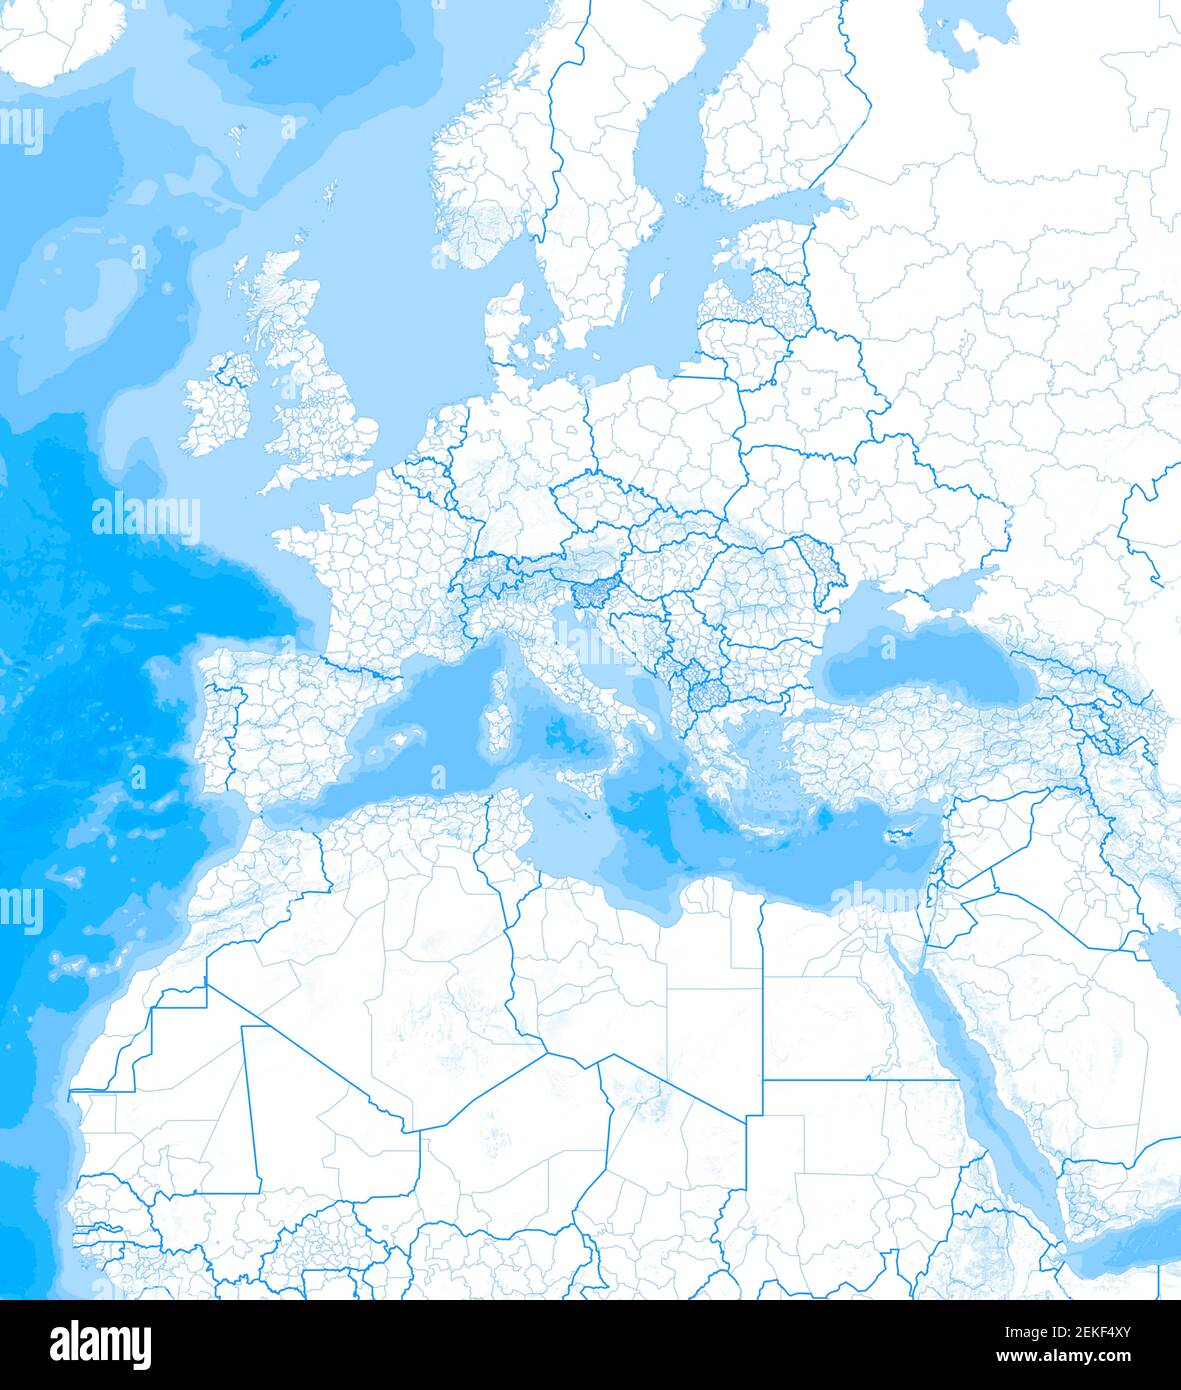 Mappa del Mar Mediterraneo e dell'Europa, dell'Africa e del Medio Oriente.  Cartografia, atlante geografico. rendering 3d. Confini e rilievi di  montagna Foto stock - Alamy